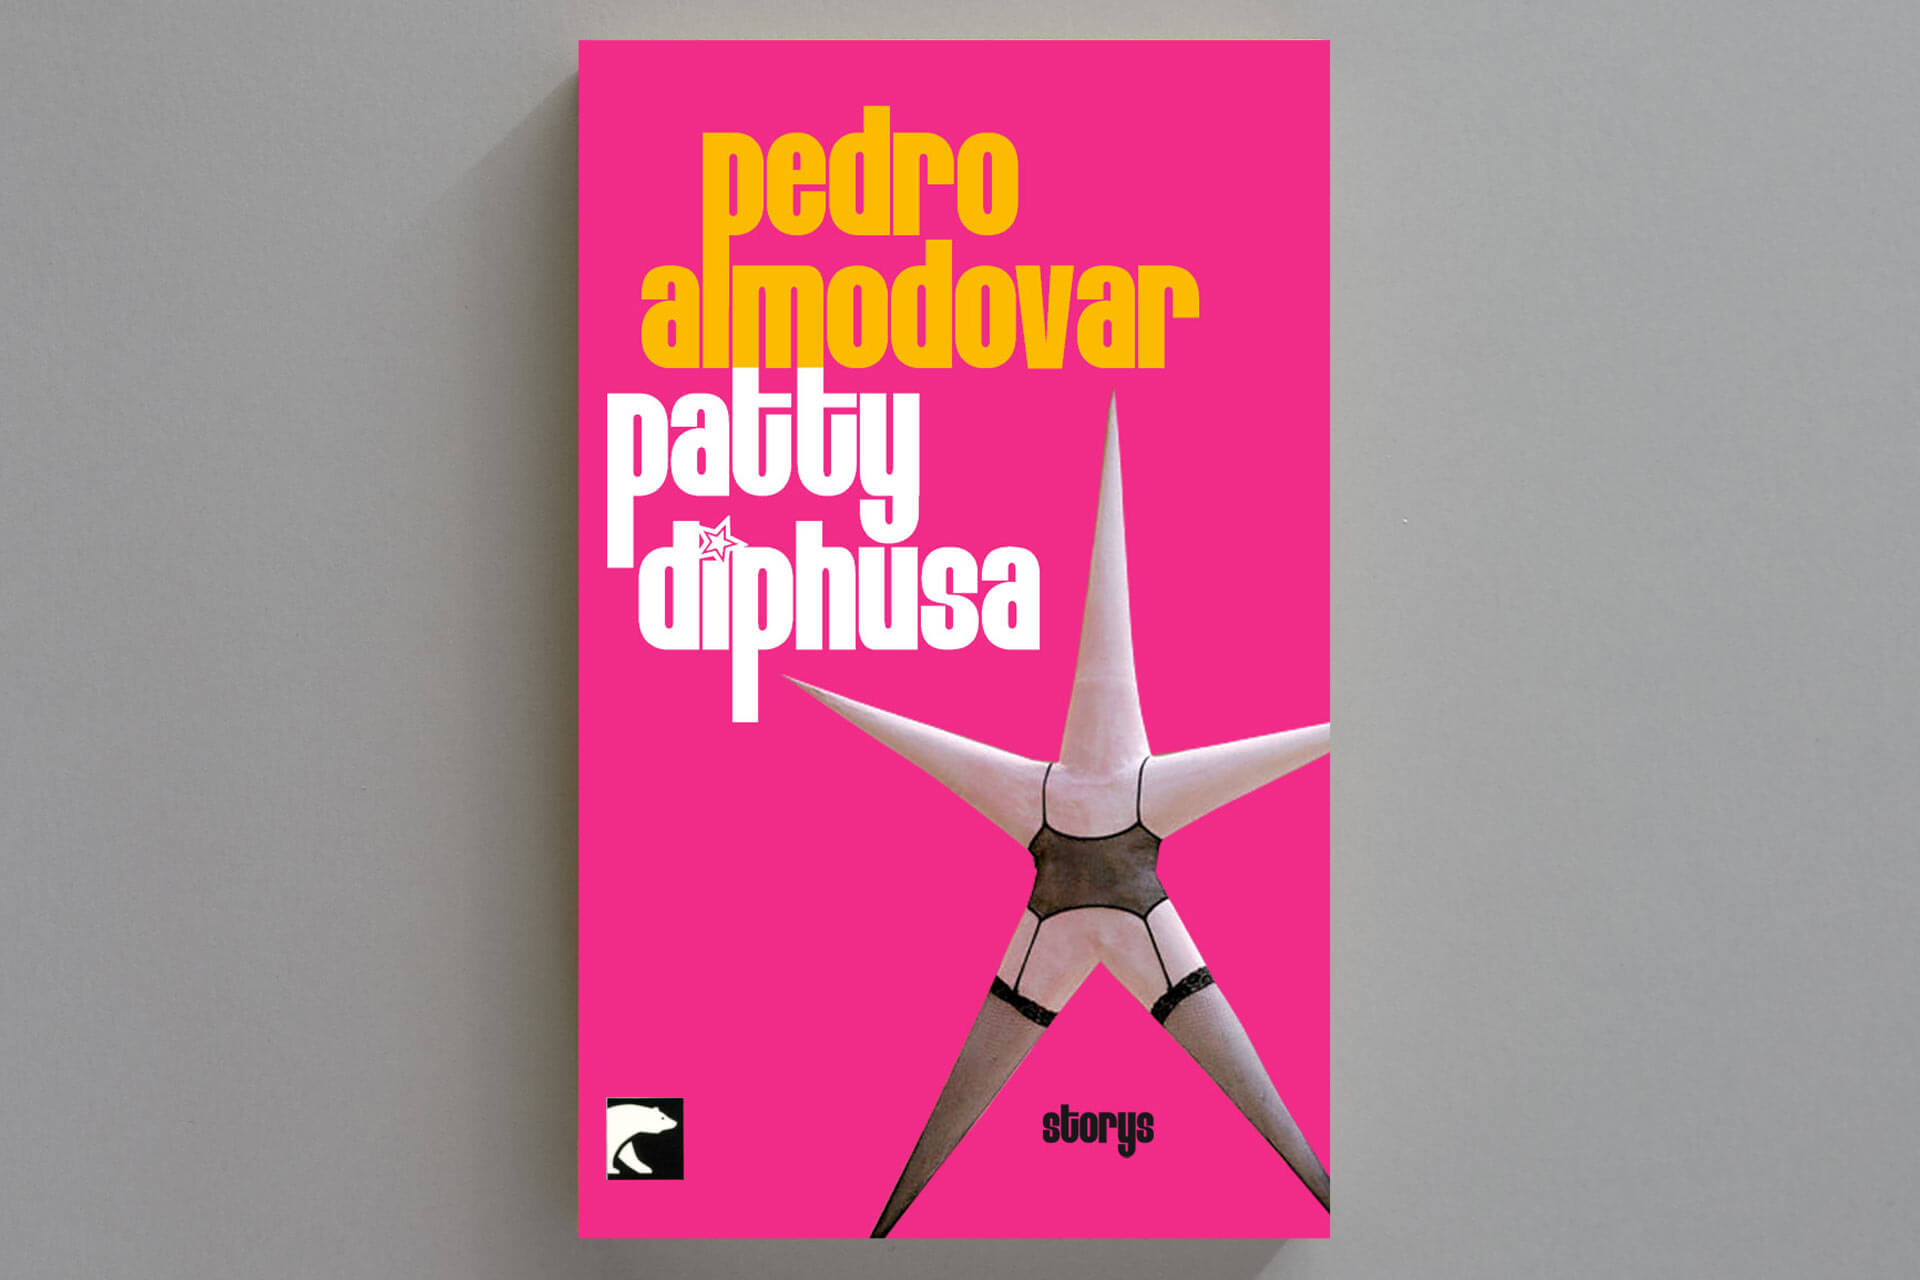 Abbildung einer Buchcover-Gestaltung für ein Taschenbuch von Pedro Almodovars „Patty Diphusa“